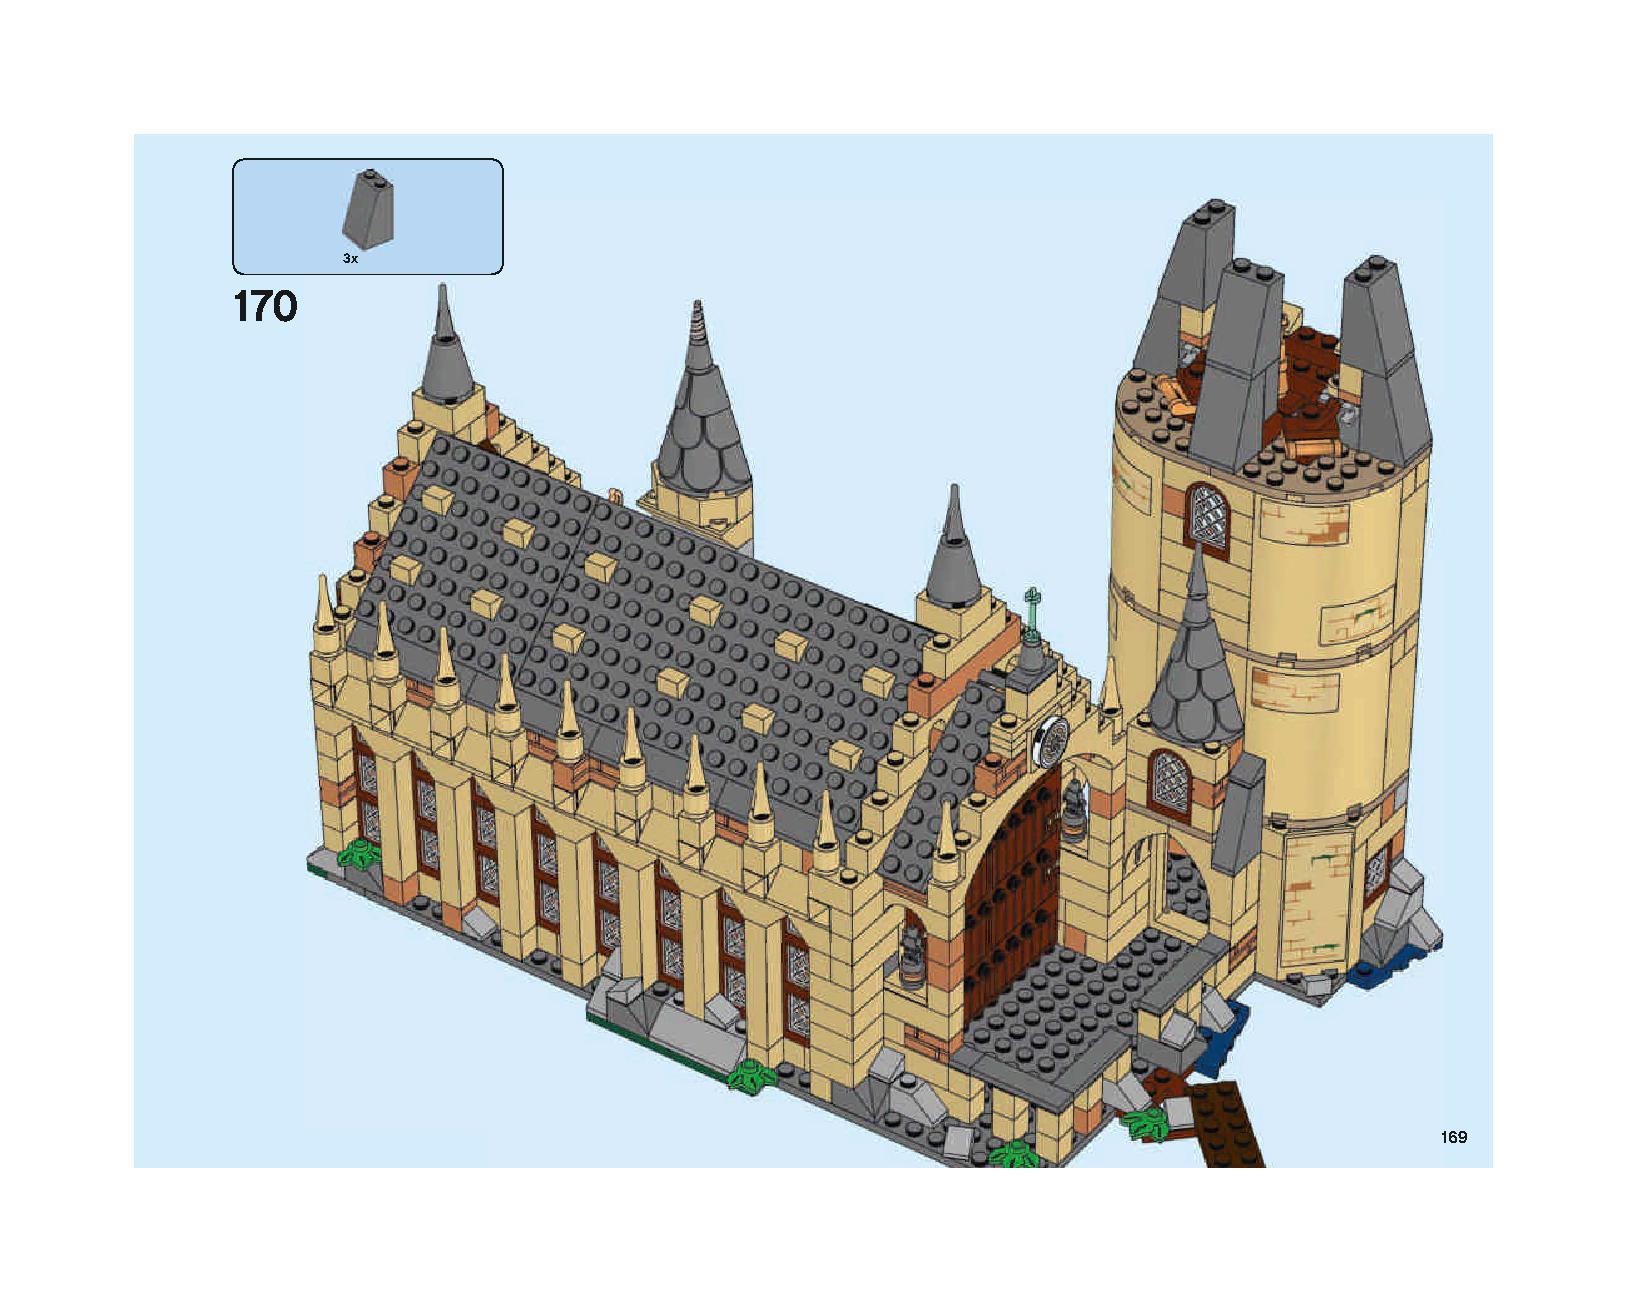 ホグワーツの大広間 75954 レゴの商品情報 レゴの説明書・組立方法 169 page